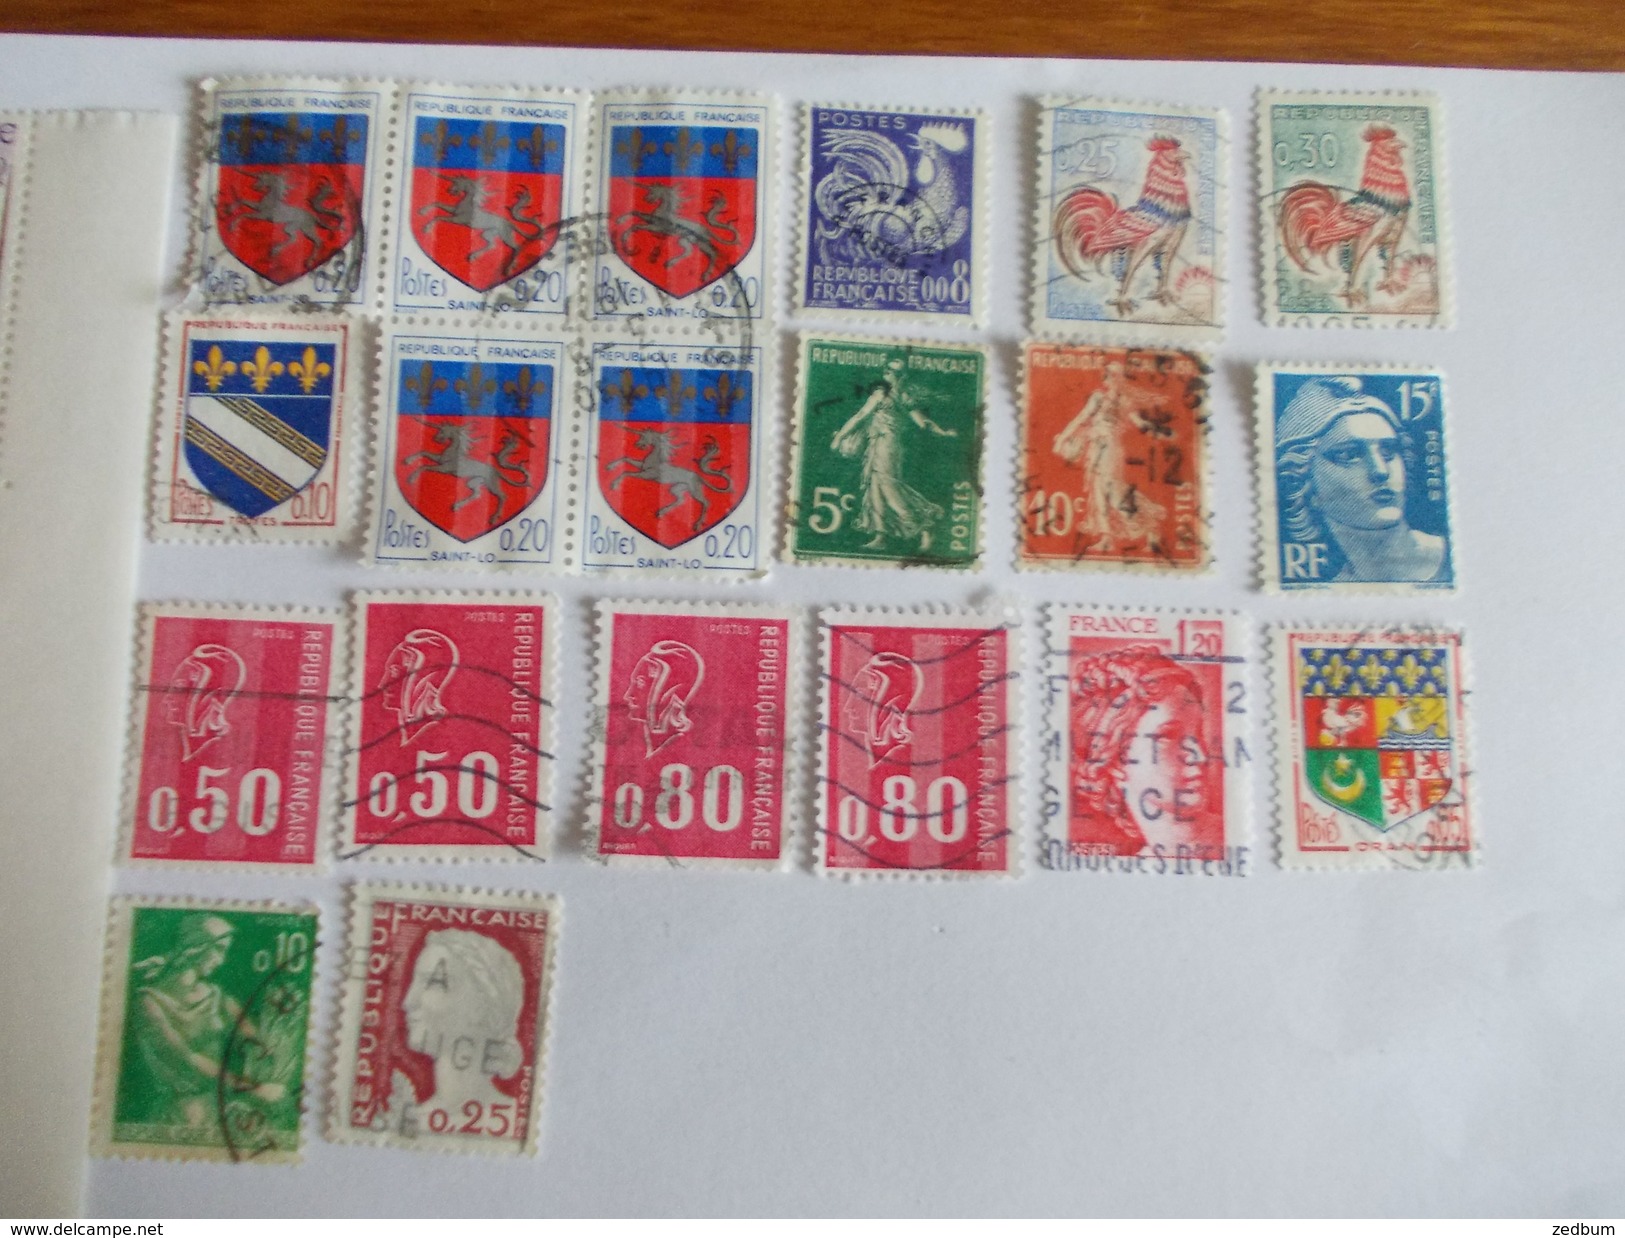 TIMBRE France Lot De Timbres à Identifier Dont Des Neufs N° 636 - Lots & Kiloware (mixtures) - Max. 999 Stamps